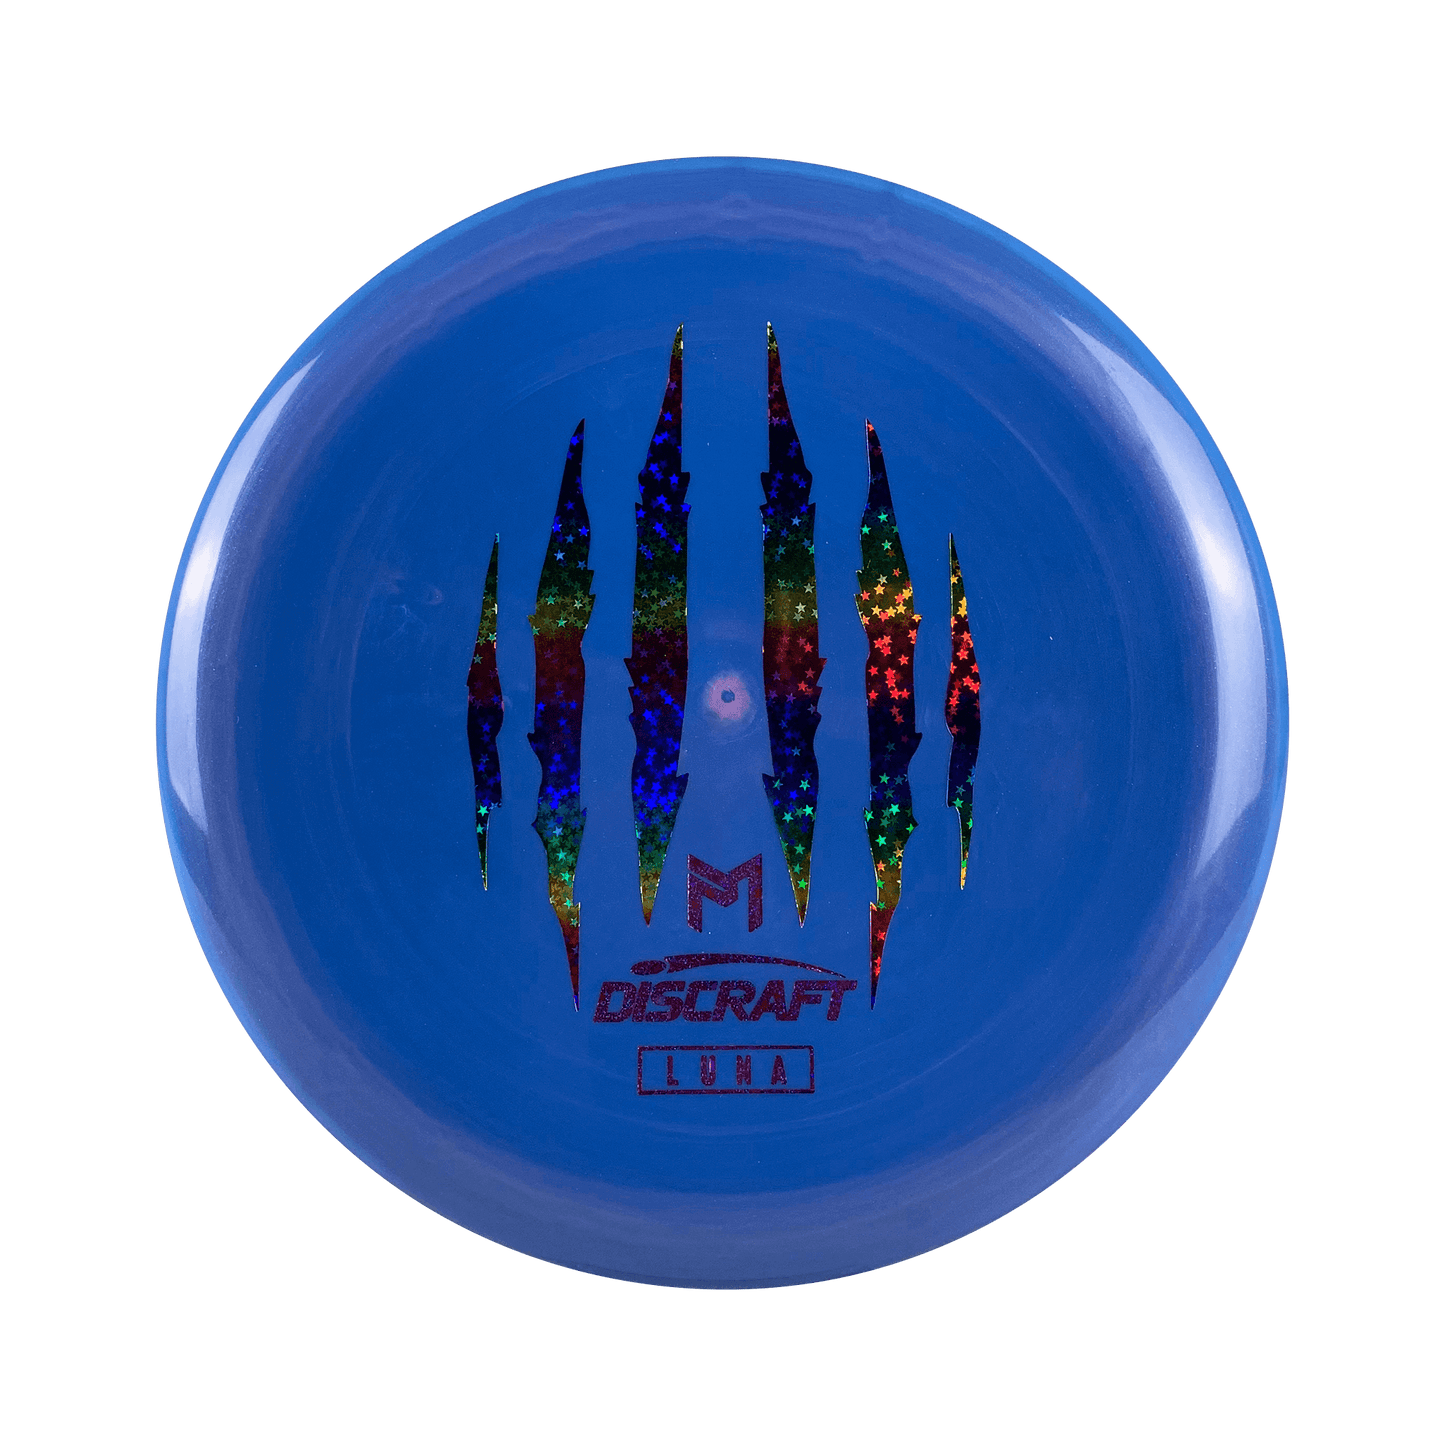 ESP Luna - Paul McBeth 6x Claw Disc Discraft multi / blurple 173 